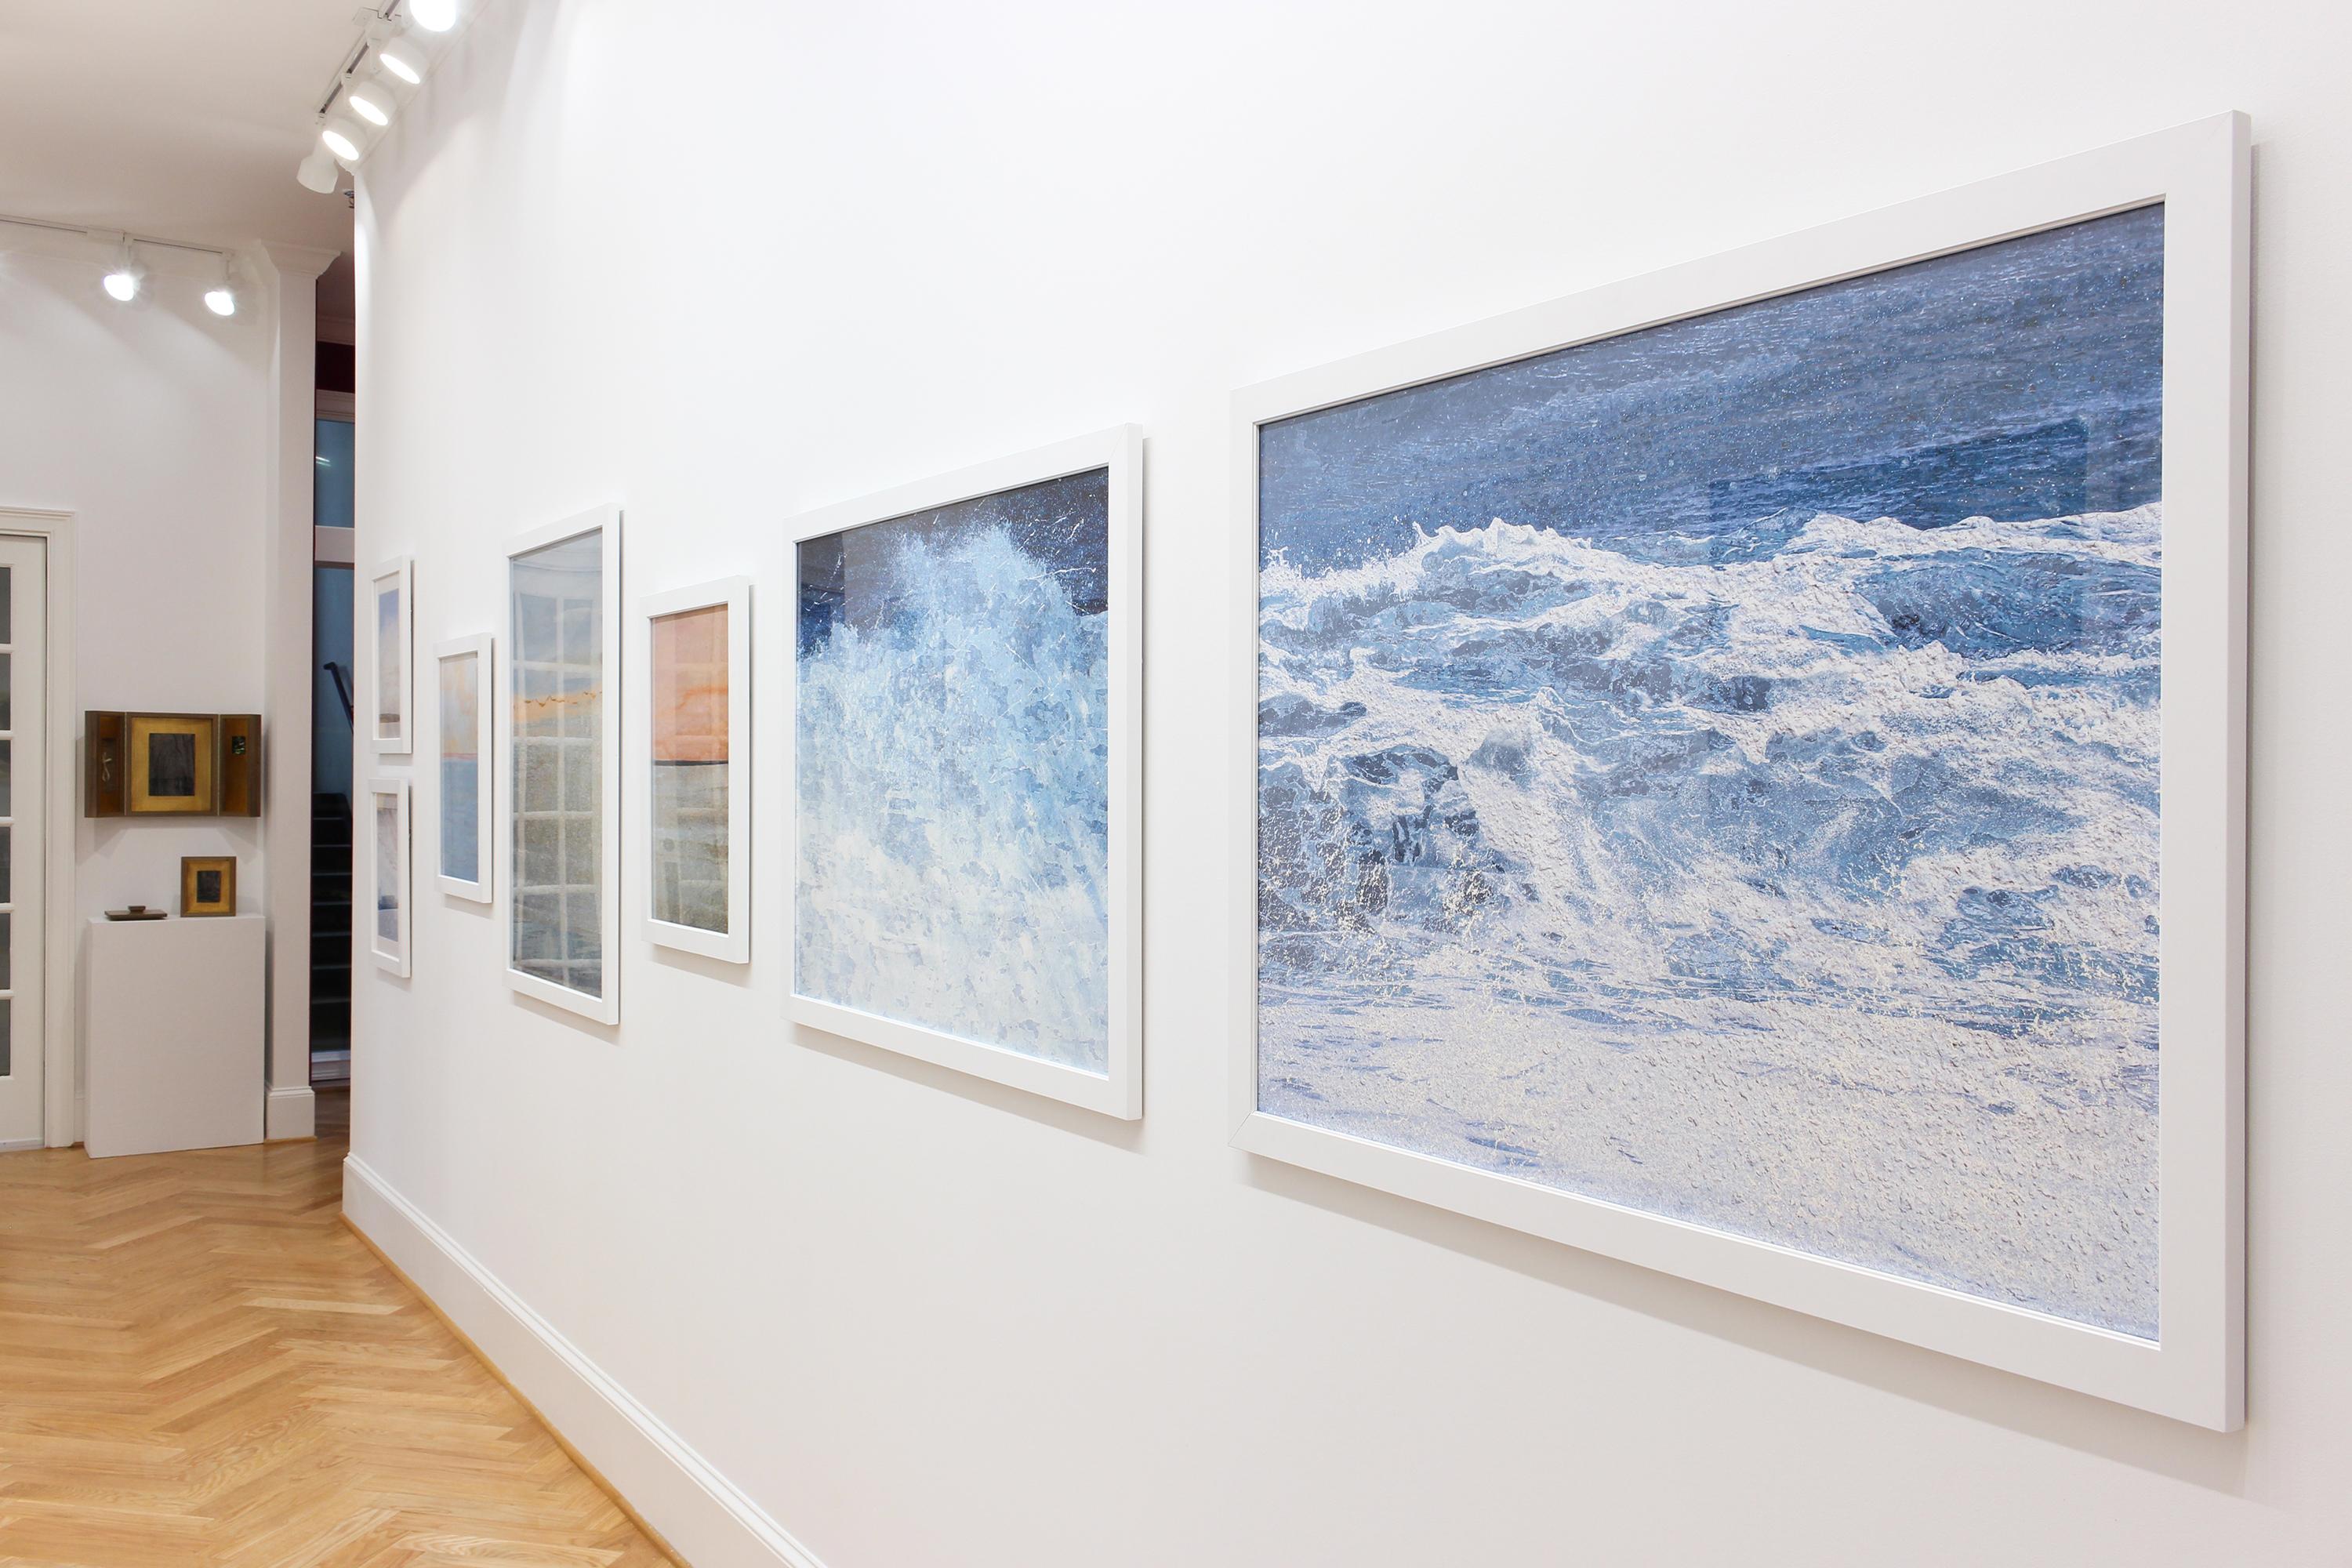 Uncontained Consumption: Seafoam - composite photo, beachscape, landscape - Blue Abstract Photograph by Jennifer McKinnon